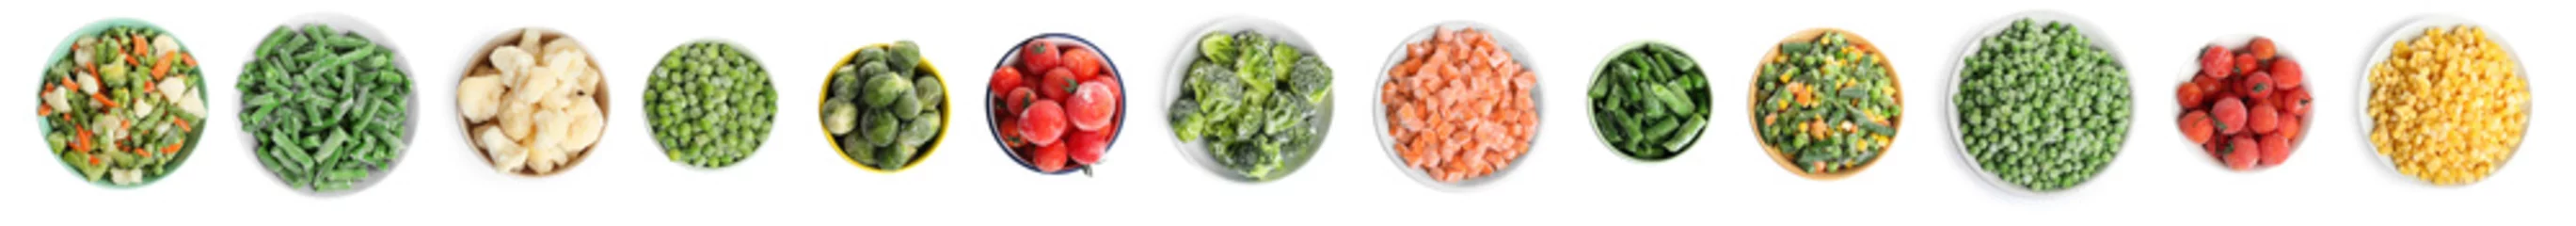 Afwasbaar Fotobehang Verse groenten Set of different frozen vegetables on white background, top view. Banner design